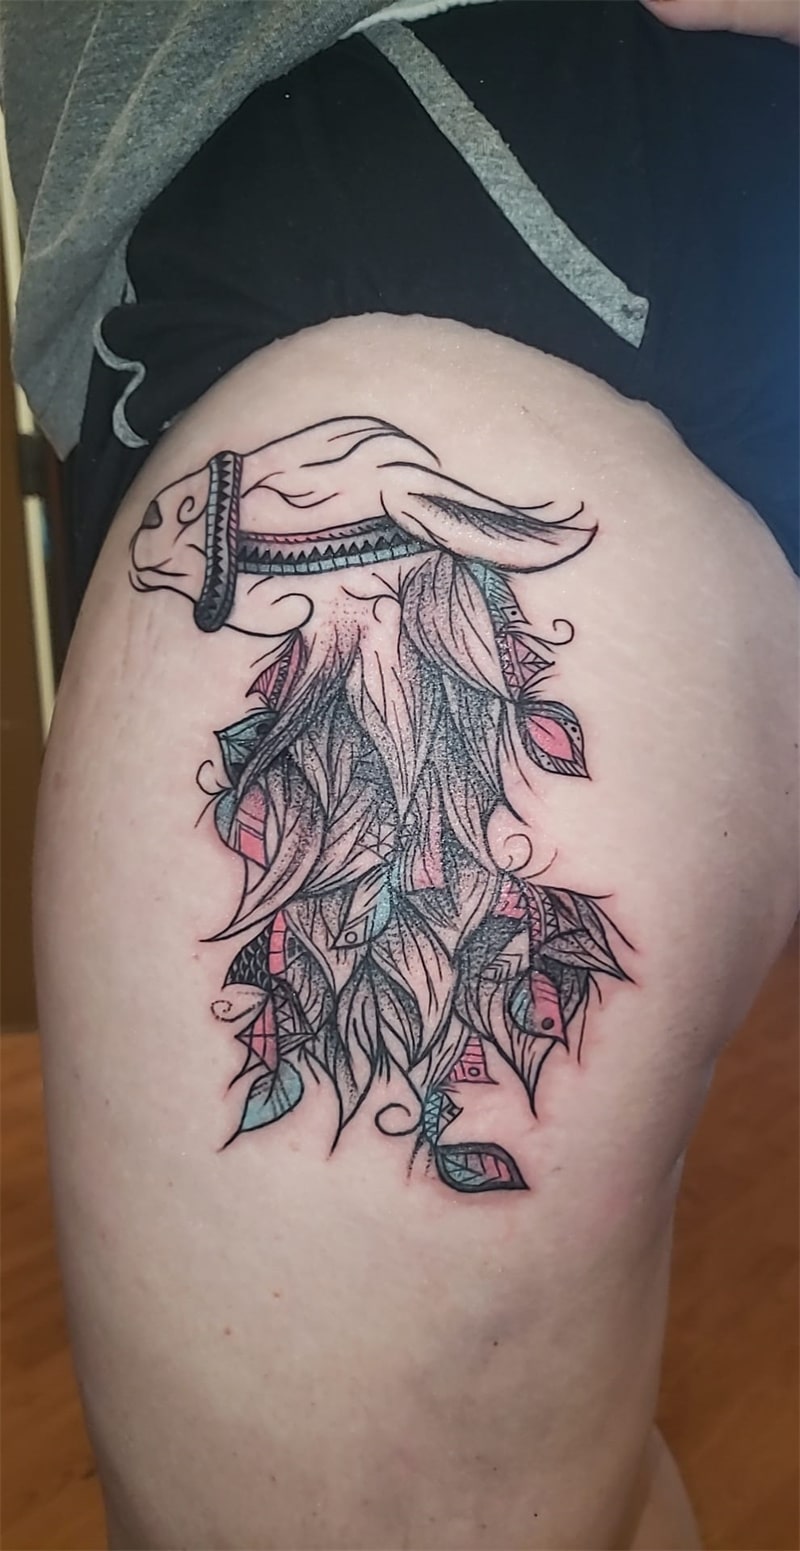 Sheep tattoo